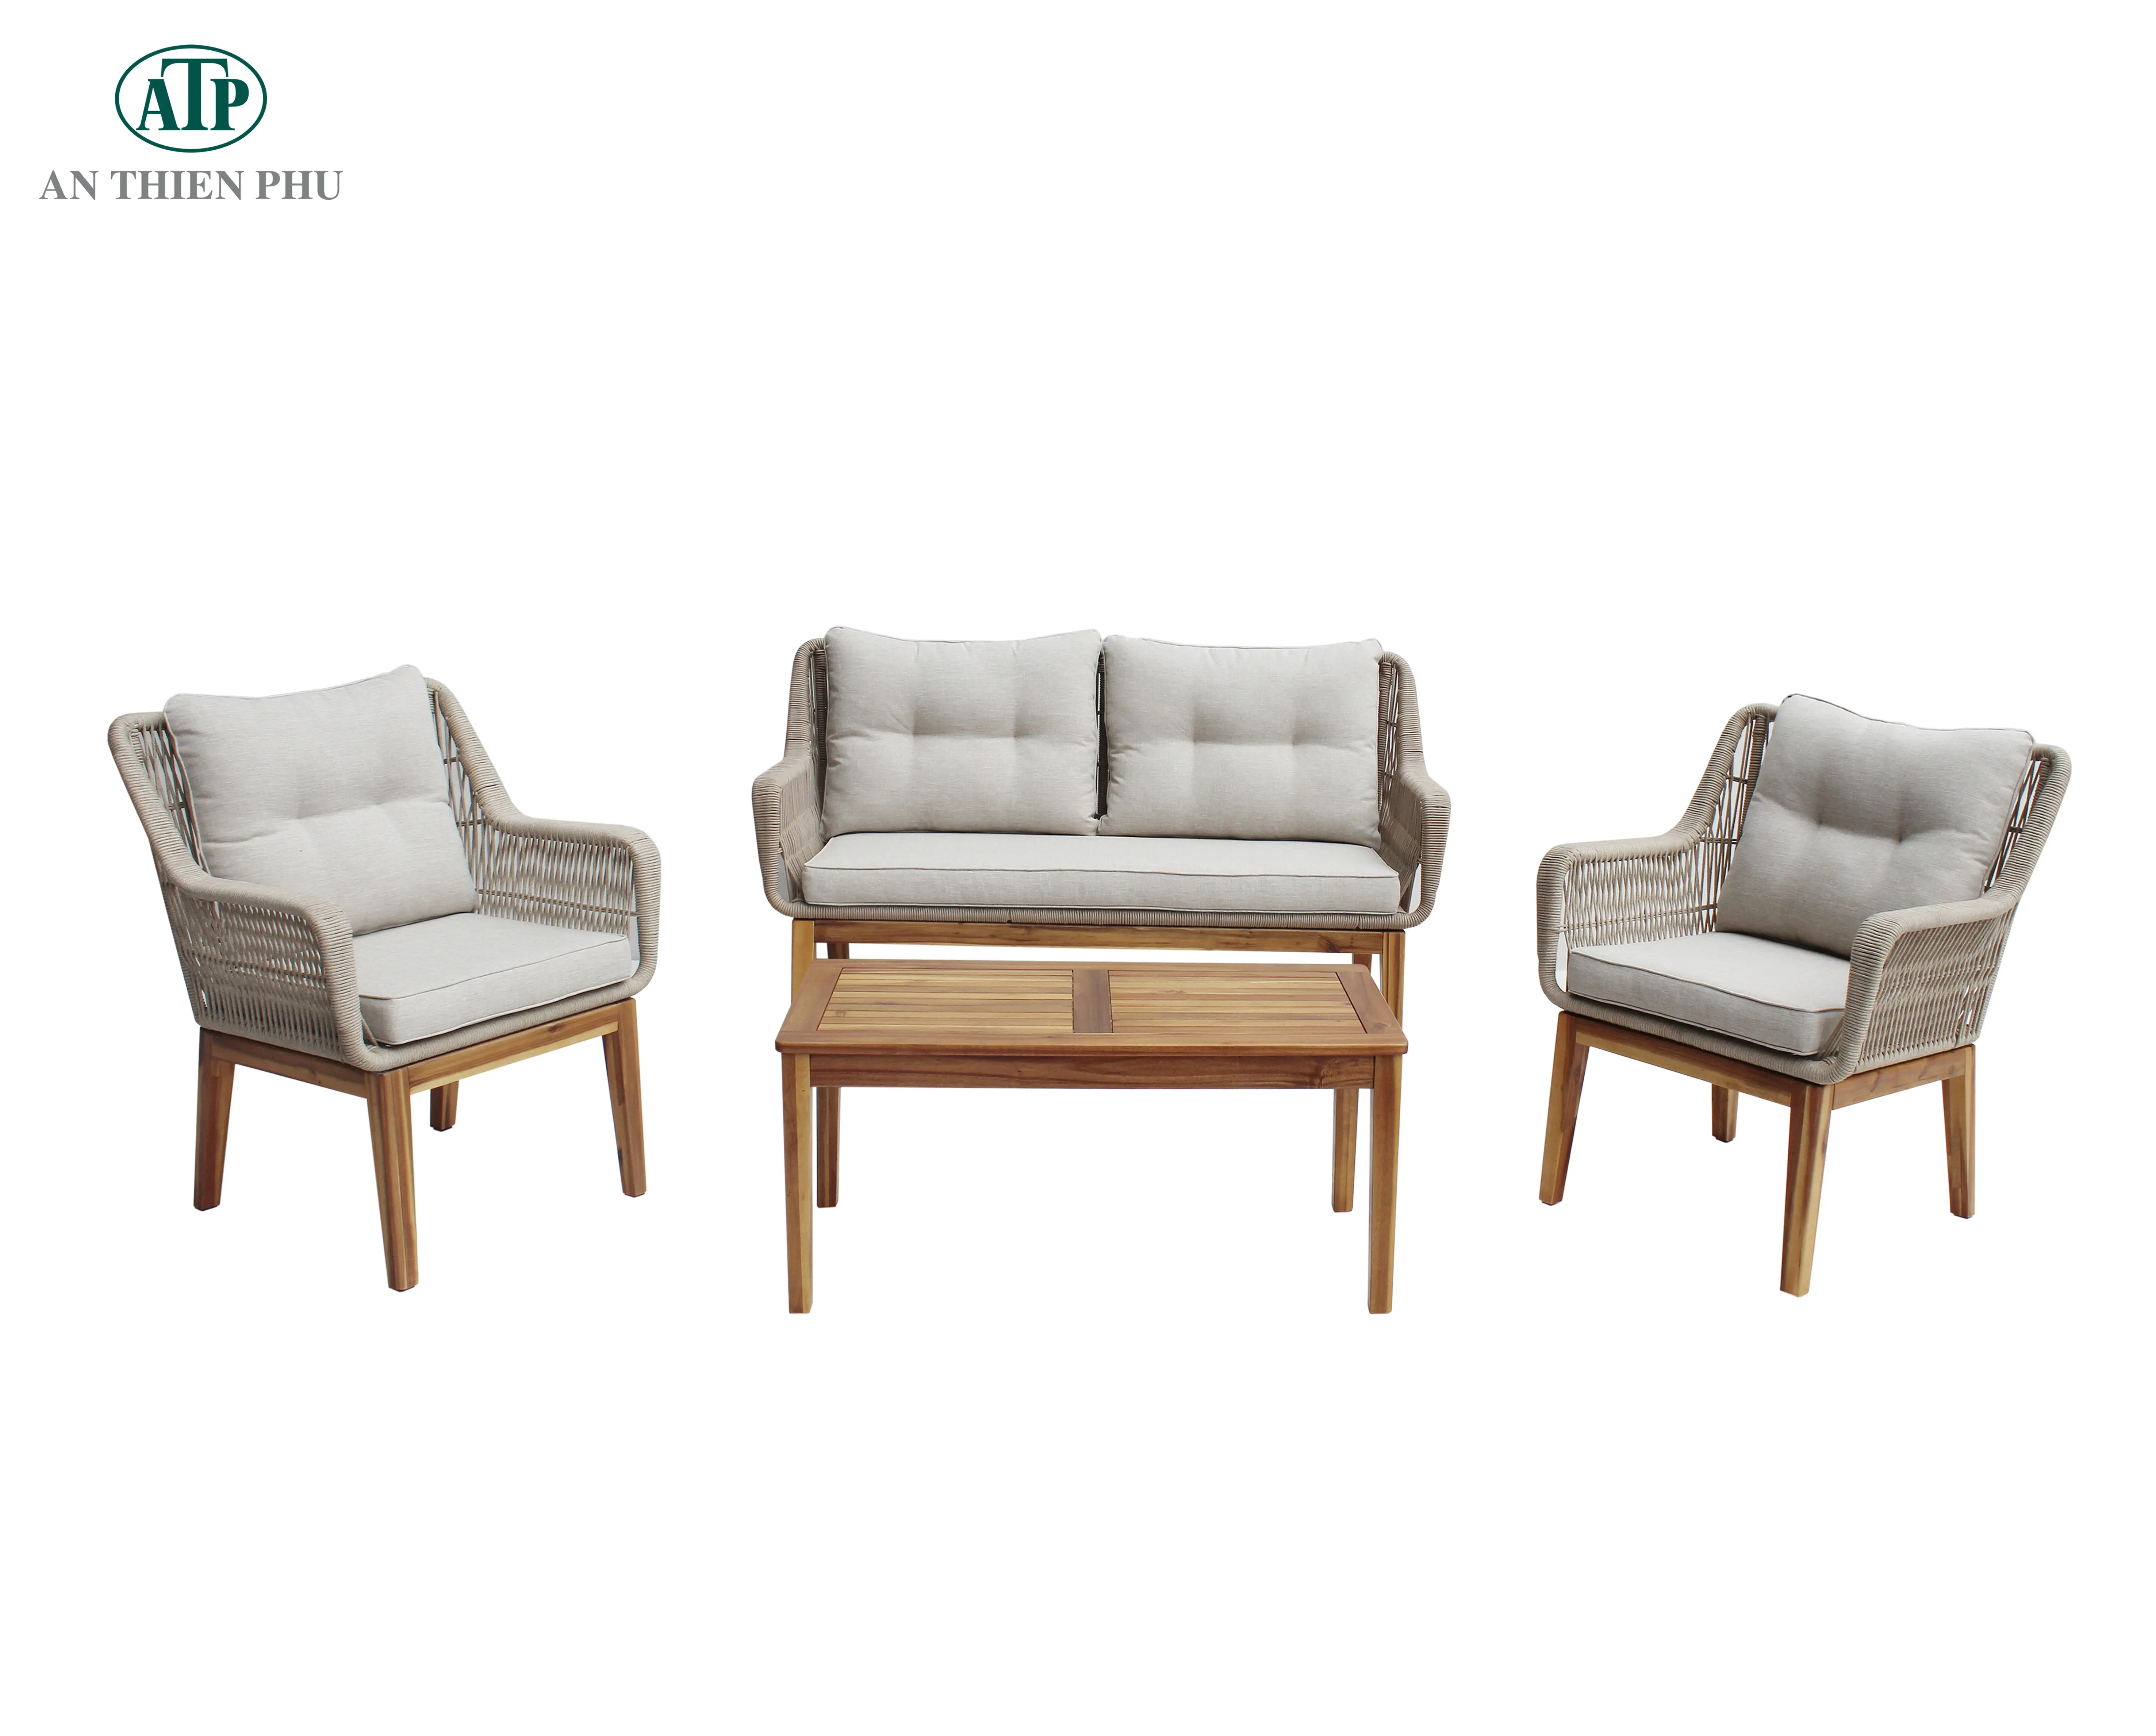 Оцинкованная стальная рама с веревочными стульями, деревянные ножки, набор для дивана, садовая мебель, изготовленная Viet Nam manufacture